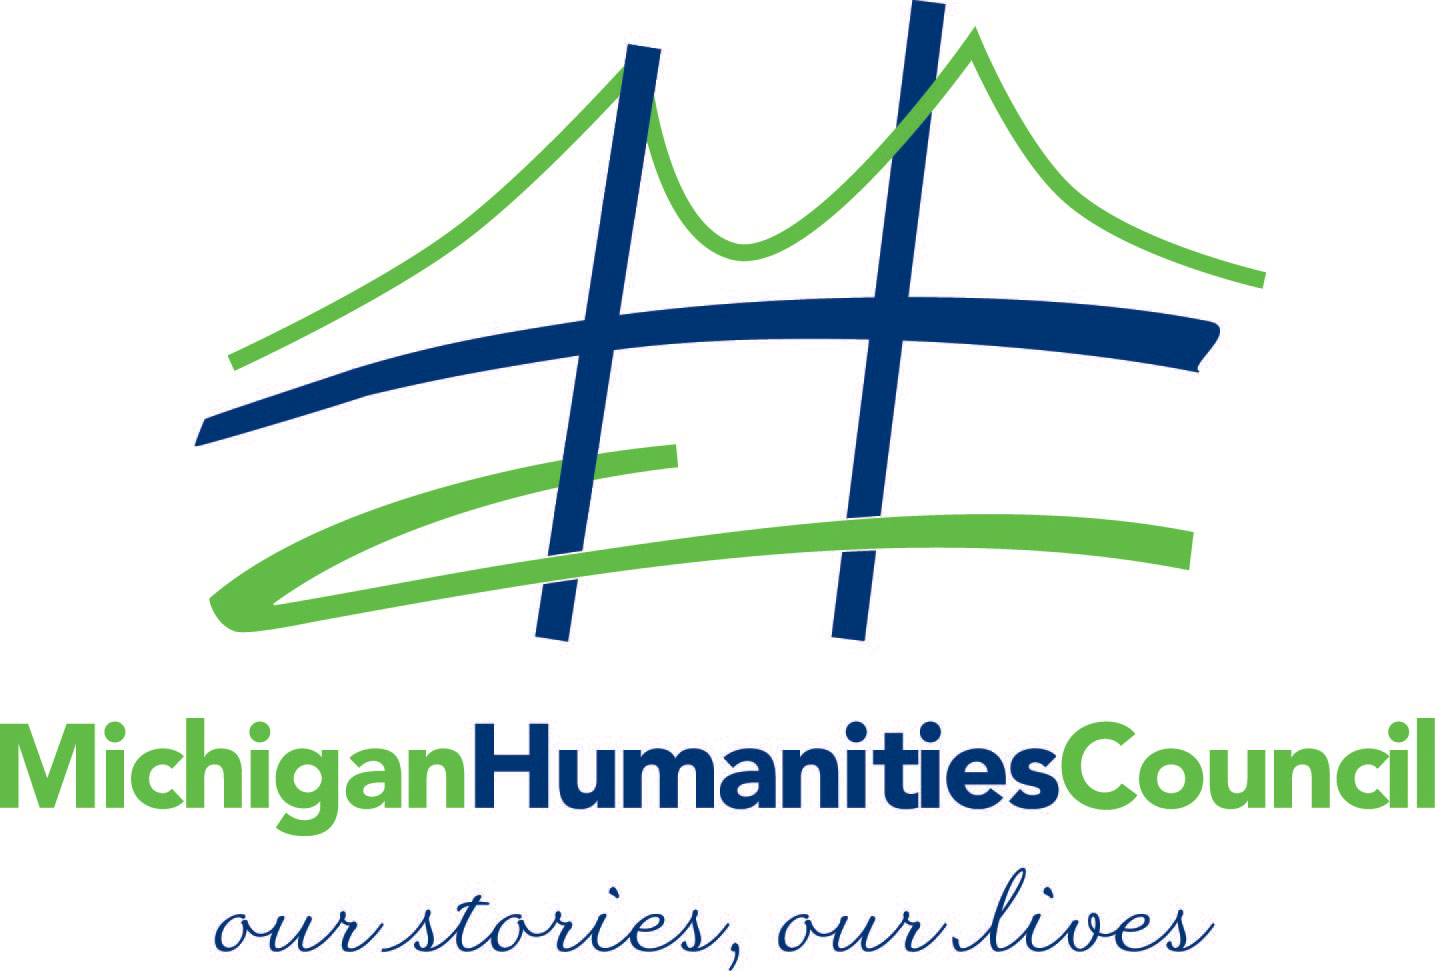 Michigan Humanities Council Logo